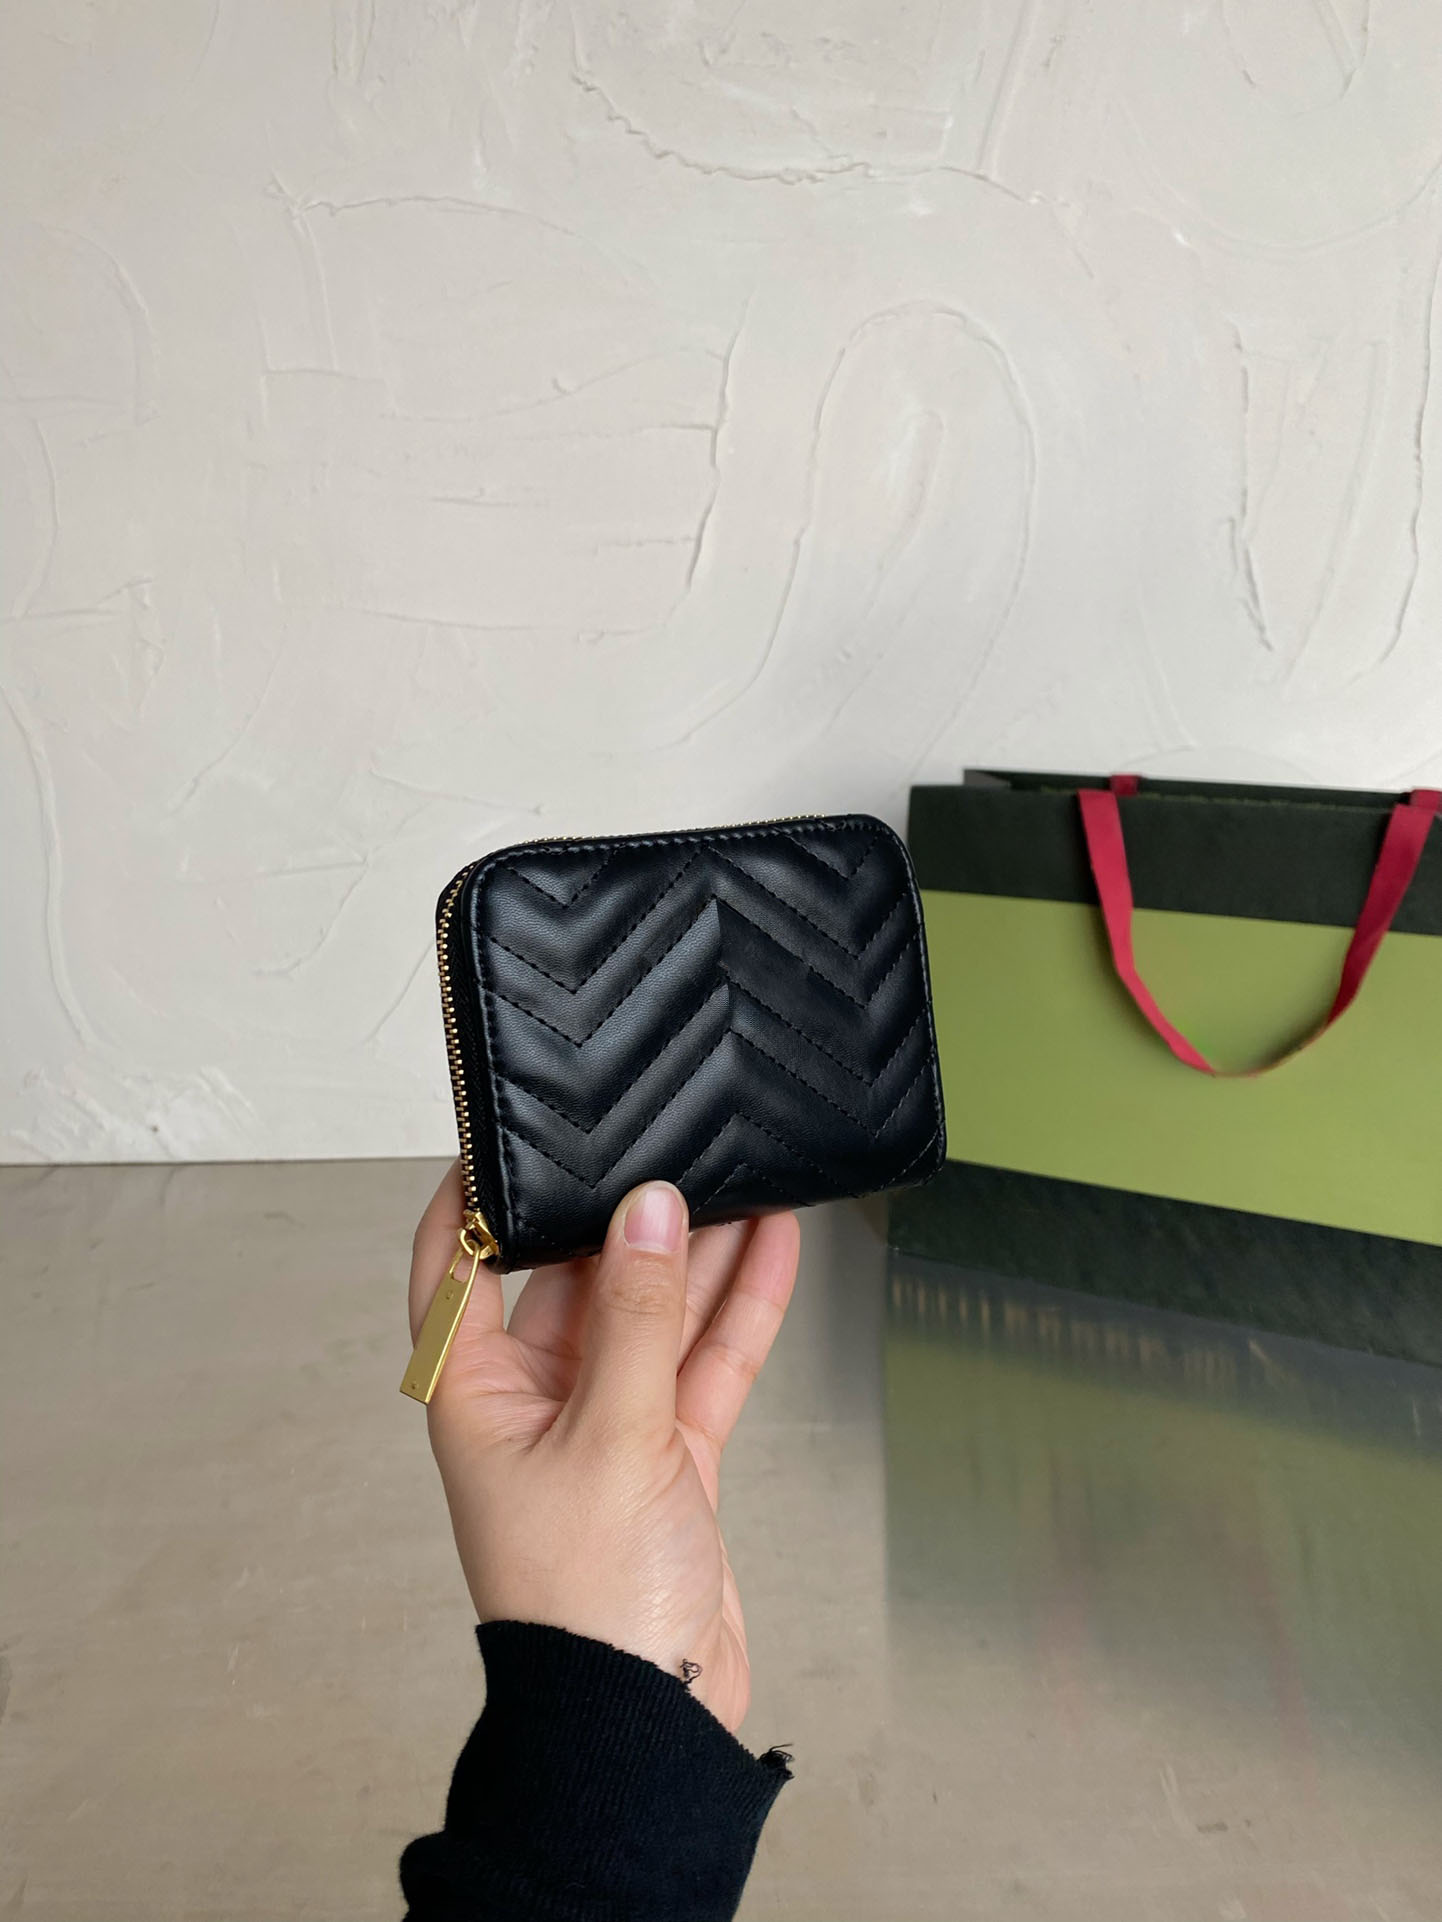 Nya damer lyxiga shoppingväska kosmetisk väska designer handväska plånbok kortväska mode väska 3-i-1 kombination väska ko väska crossbody väska mobiltelefon väska